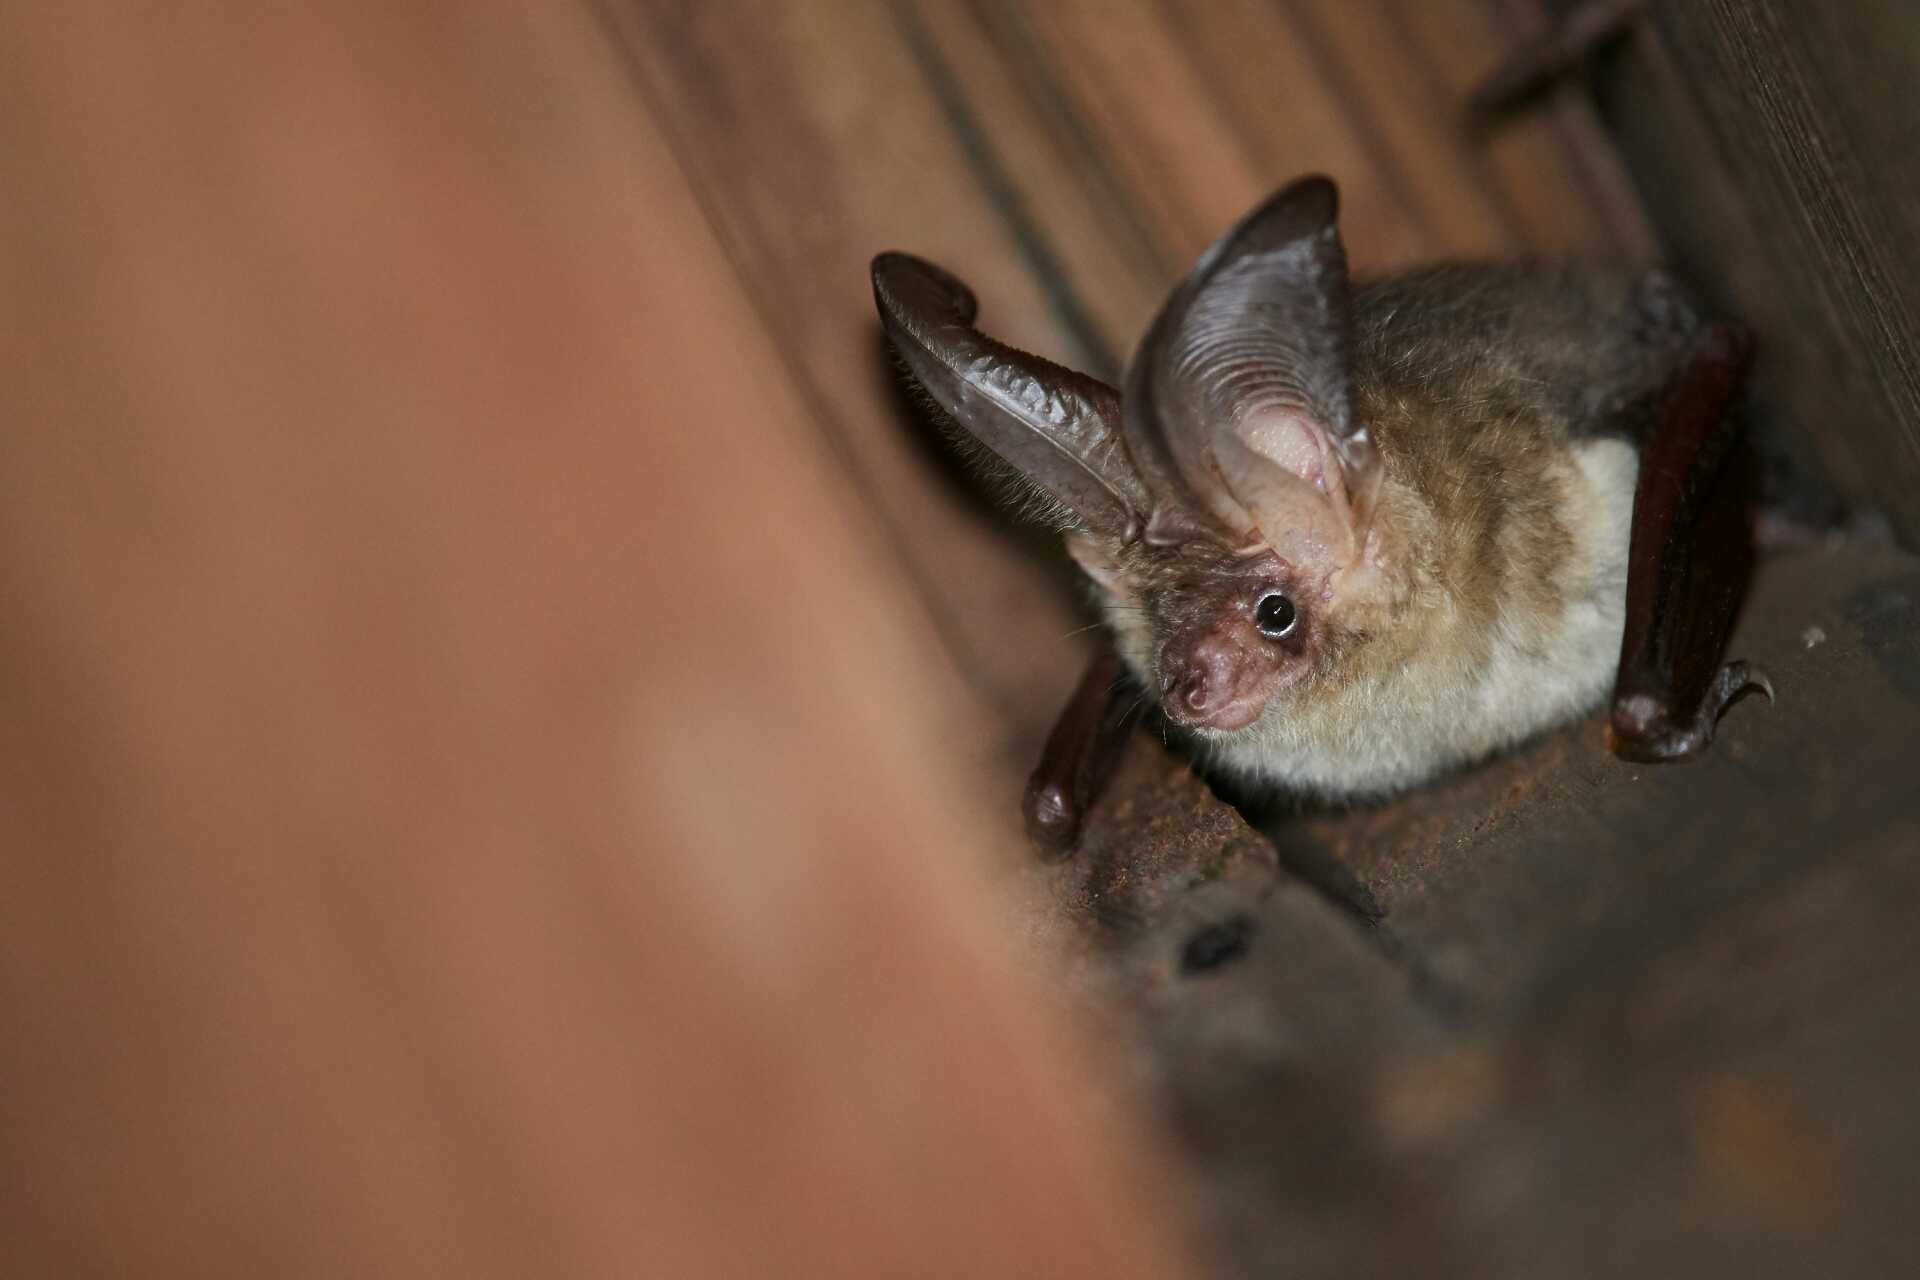 A close up shot of a bat